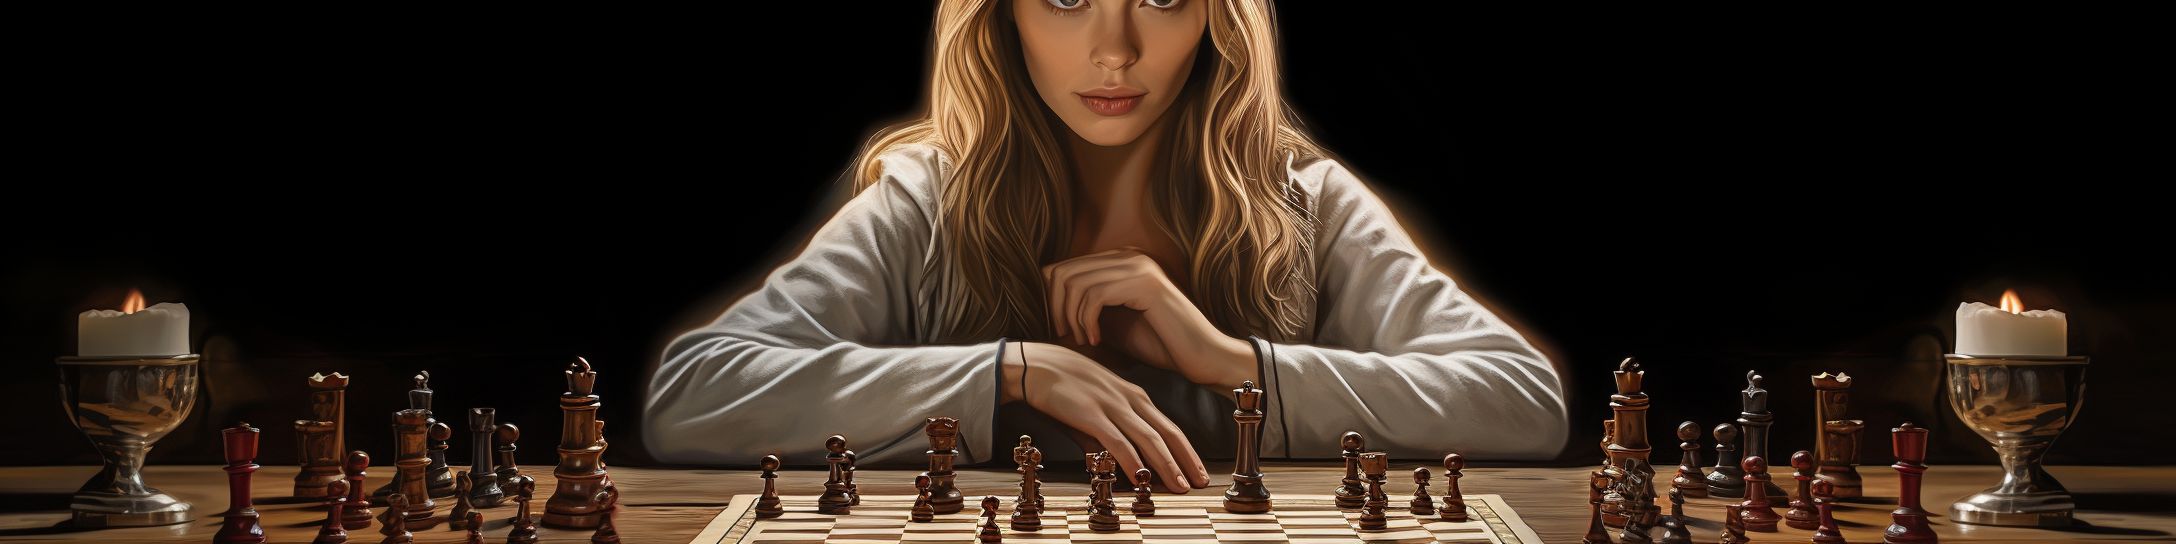 L'influence de Pia Cramling dans le jeu d'échecs au féminin